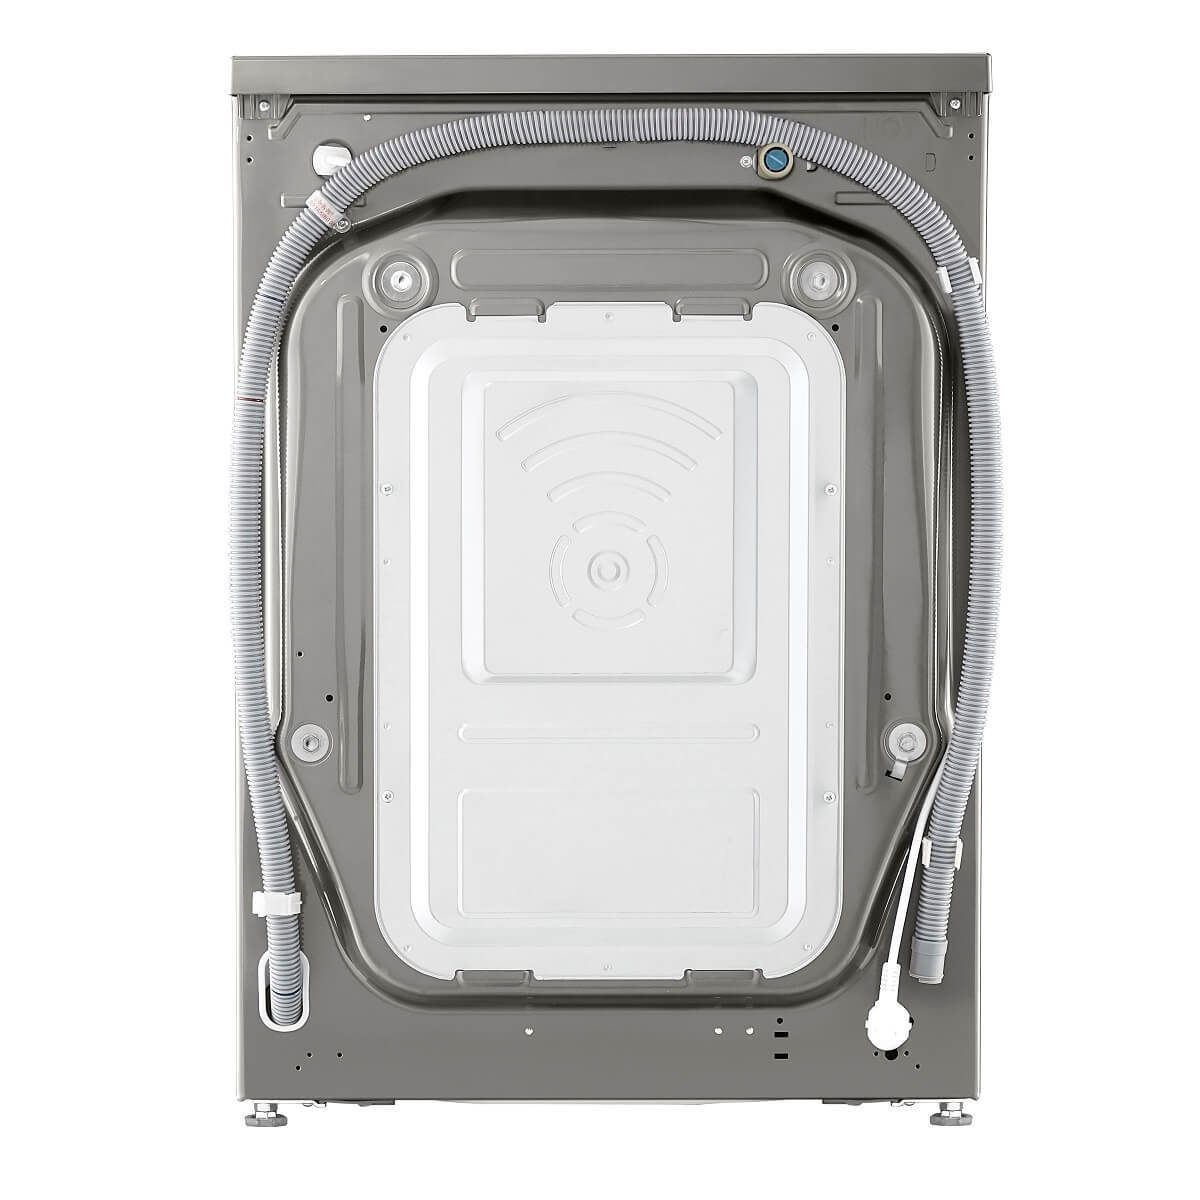 Pračka s předním plněním LG FSR7A04PG, A-10%, 10 kg